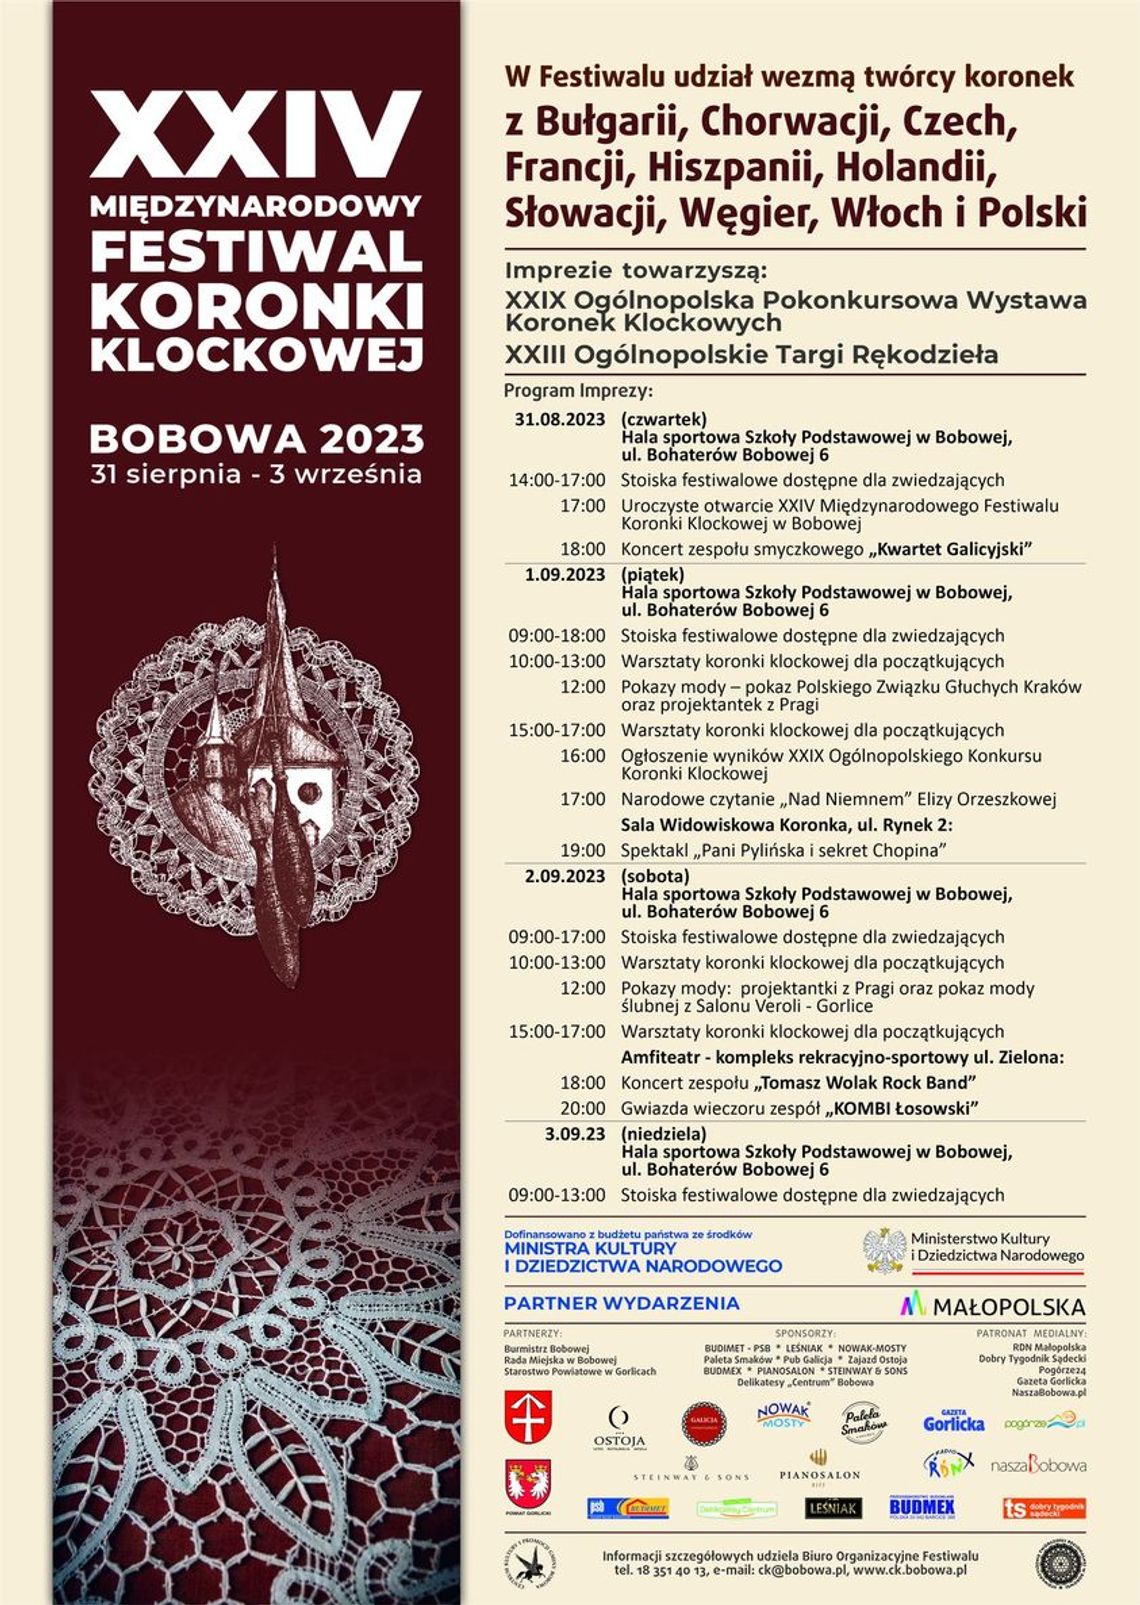 XXIV Międzynarodowy Festiwal Koronki Klockowej 2023 | halogorlice.info